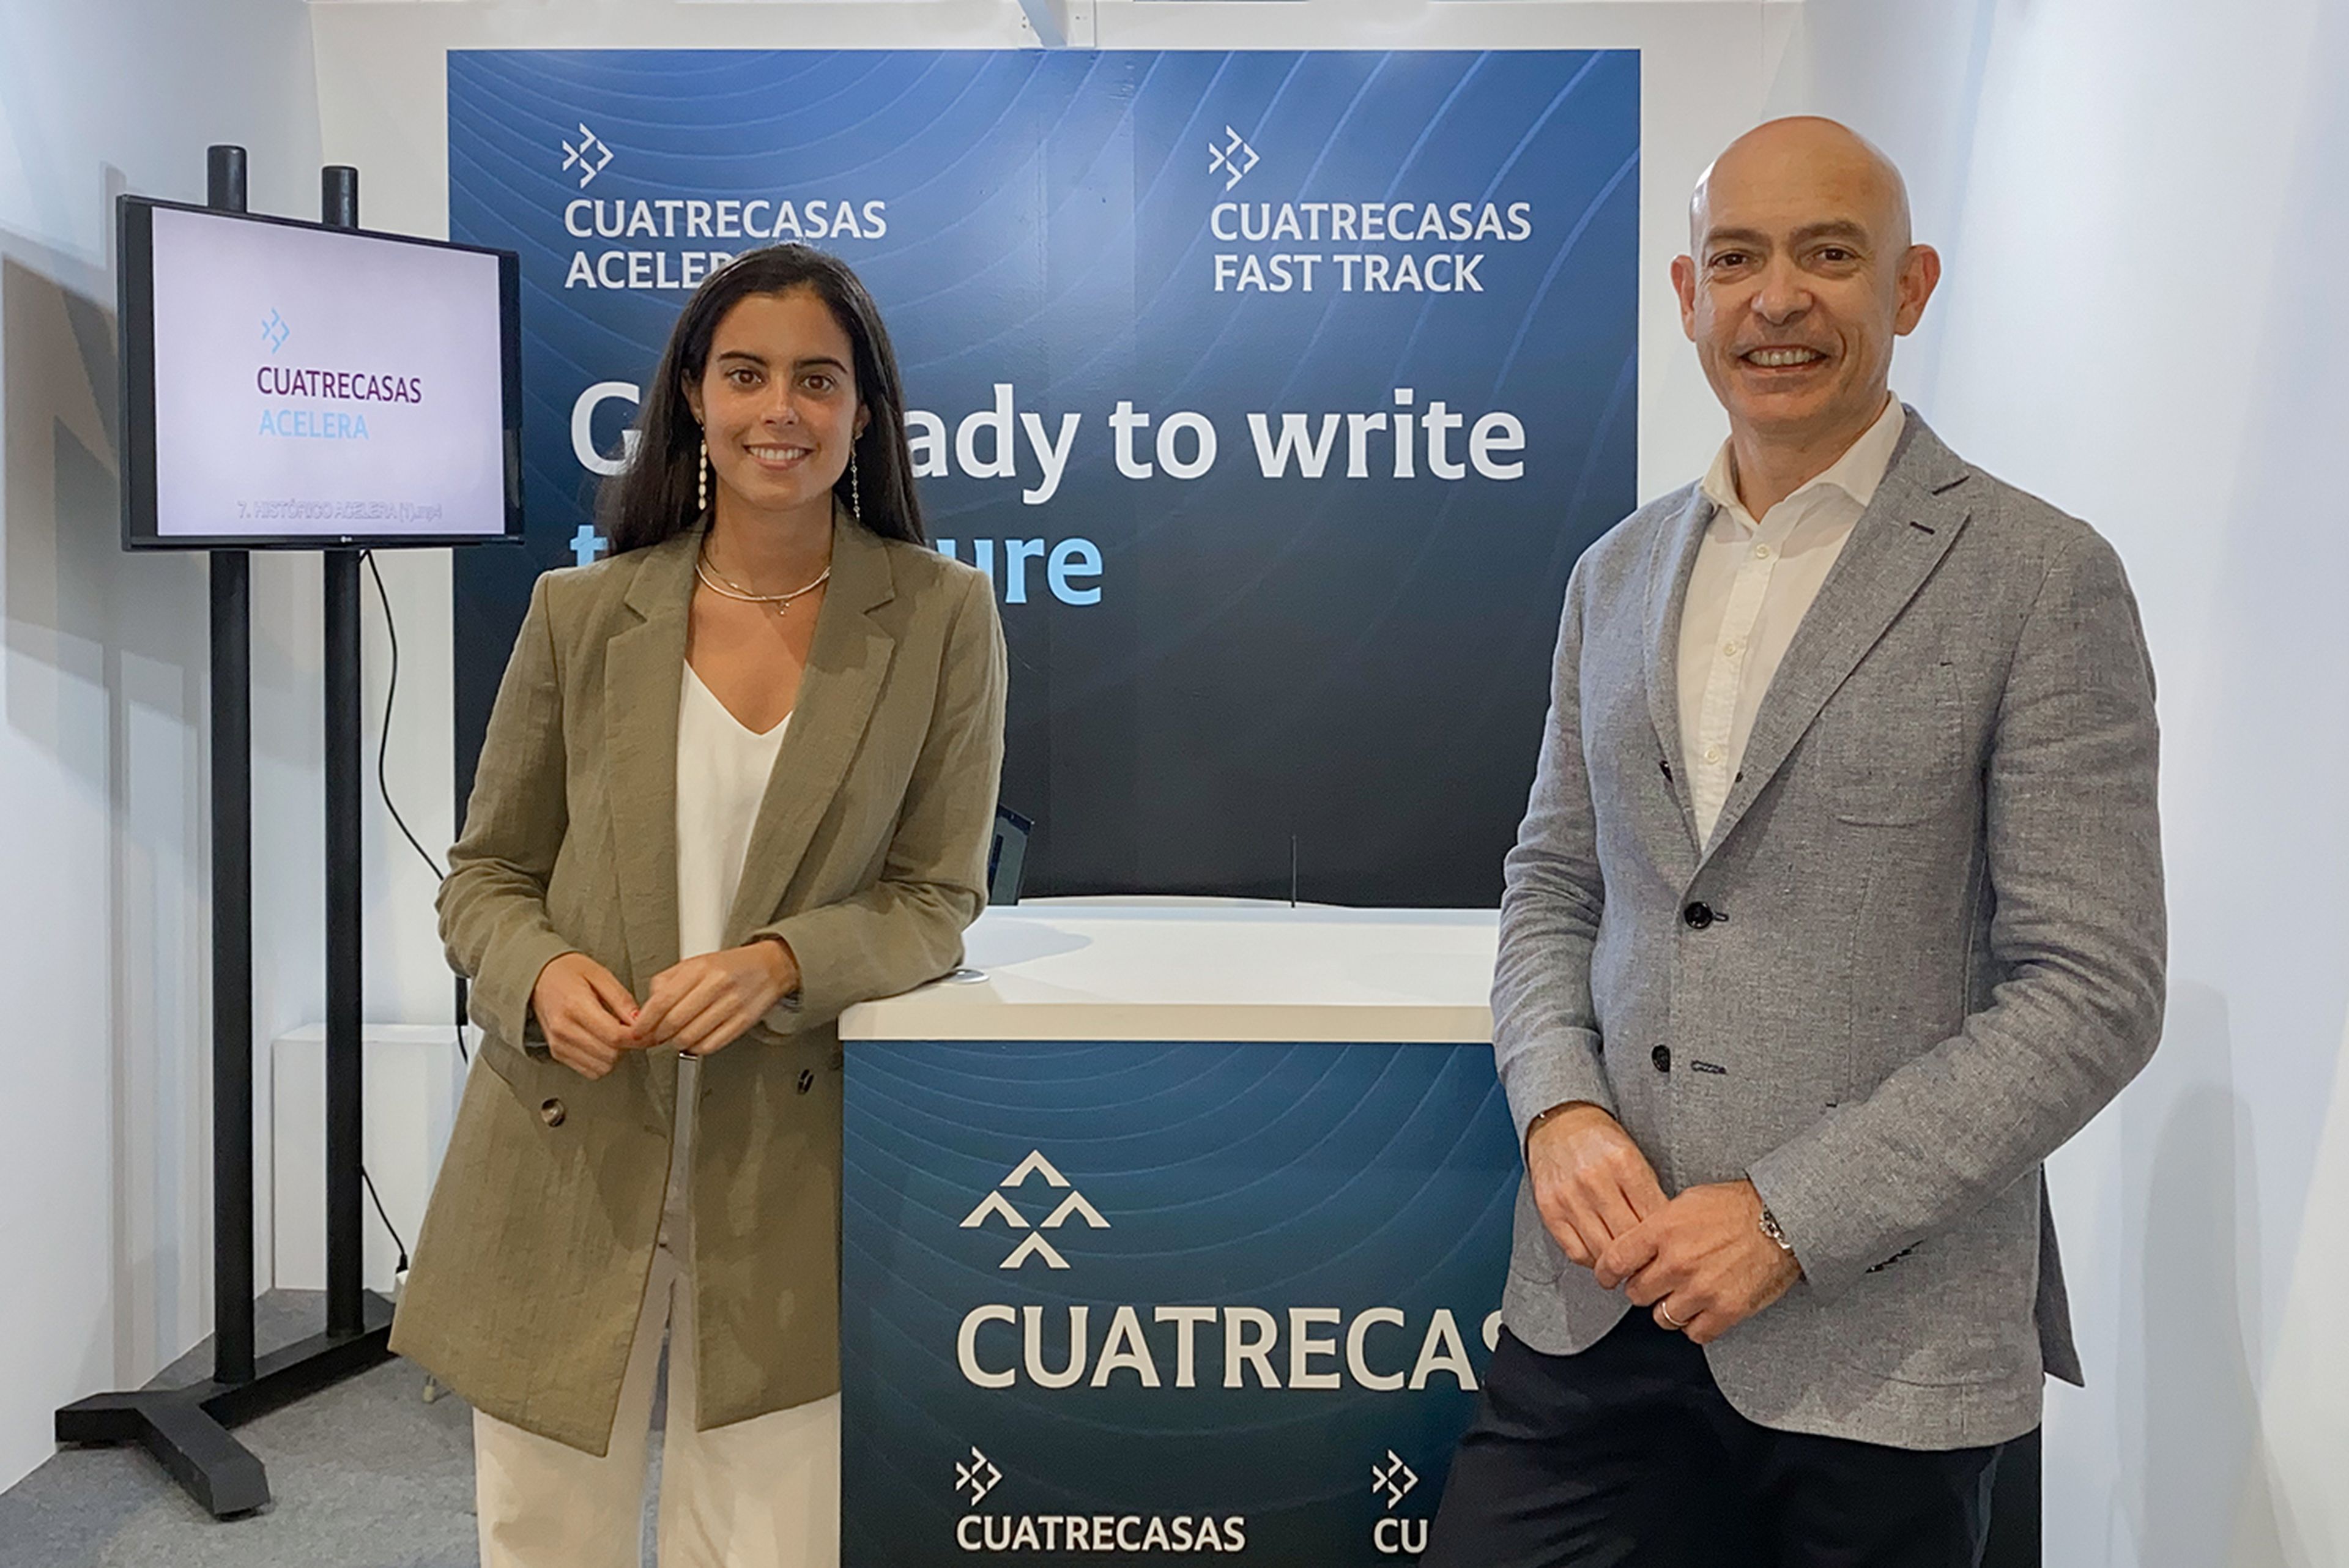 Francesc Muñoz, CIO de Cuatrecasas, junto a Alba Molina Marcos, Innovation Project Manager de Cuatrecasas.